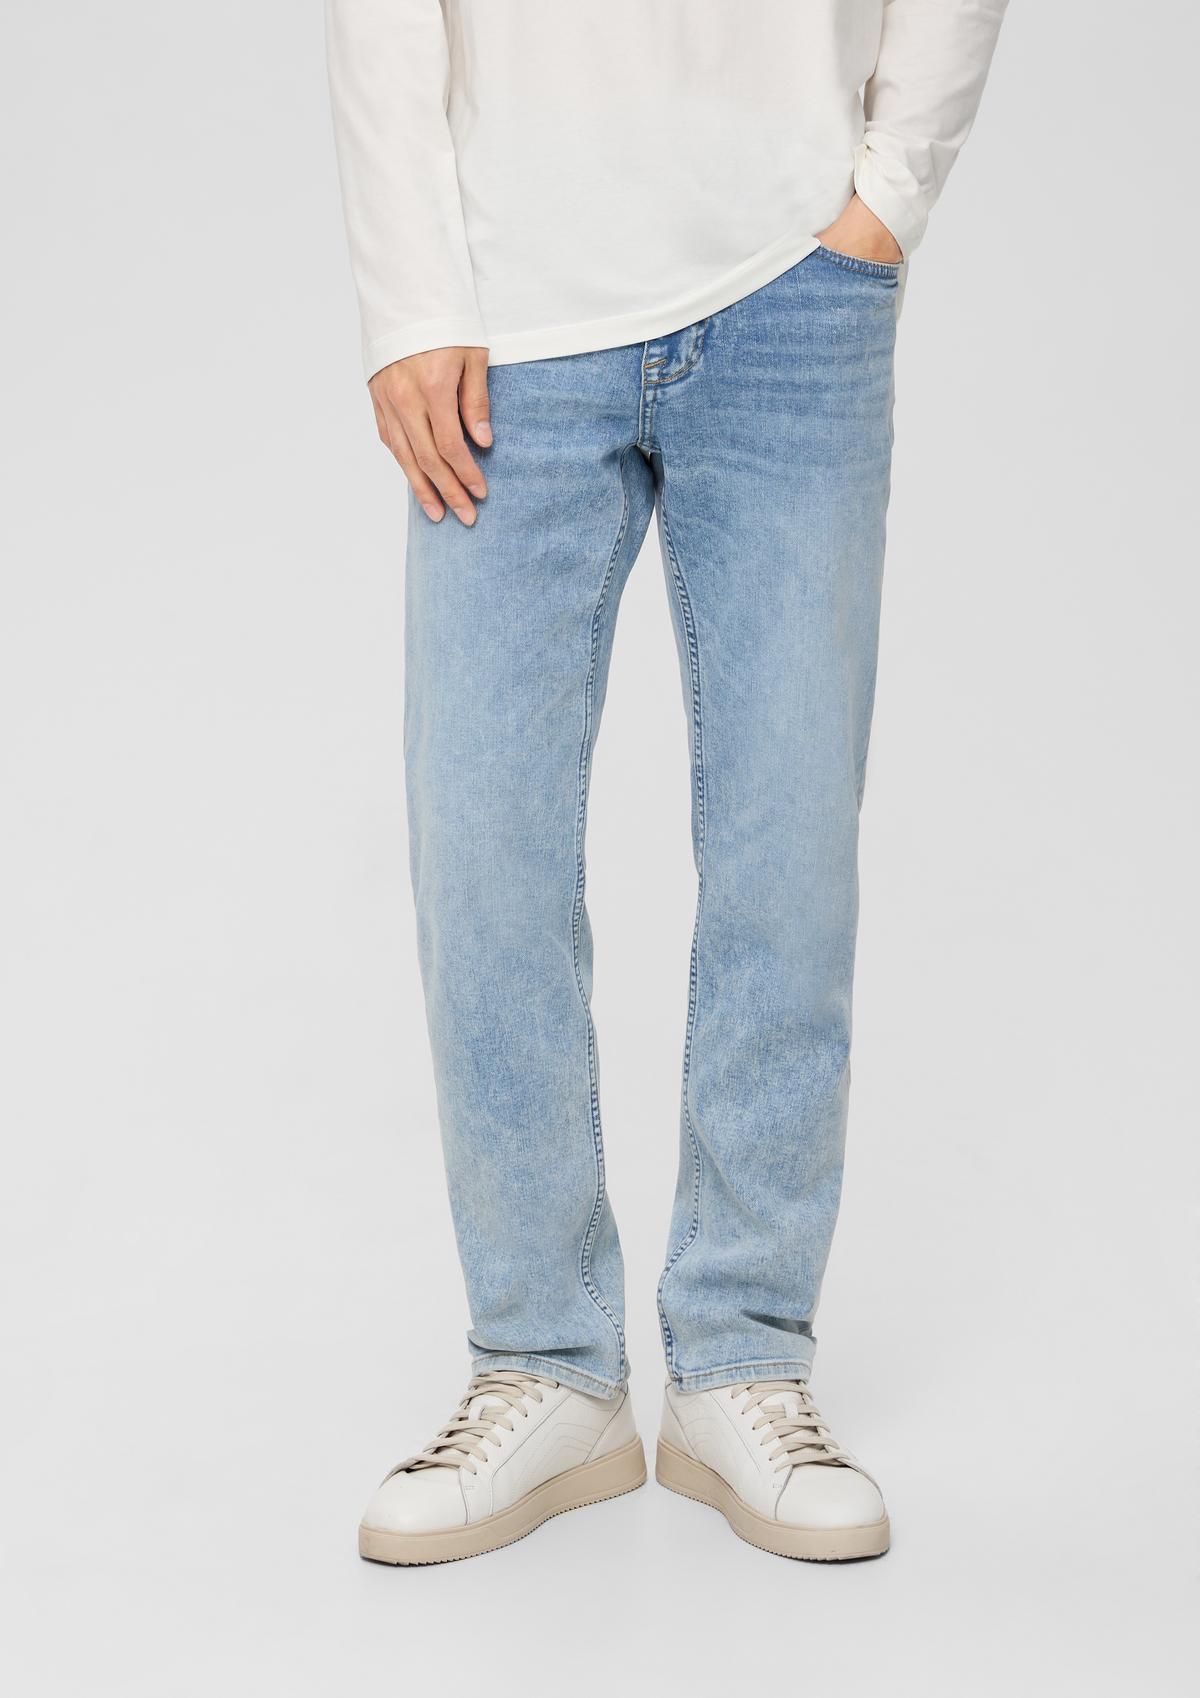 Jeans Nelio / slim fit / mid rise / slim leg / elastisch katoen